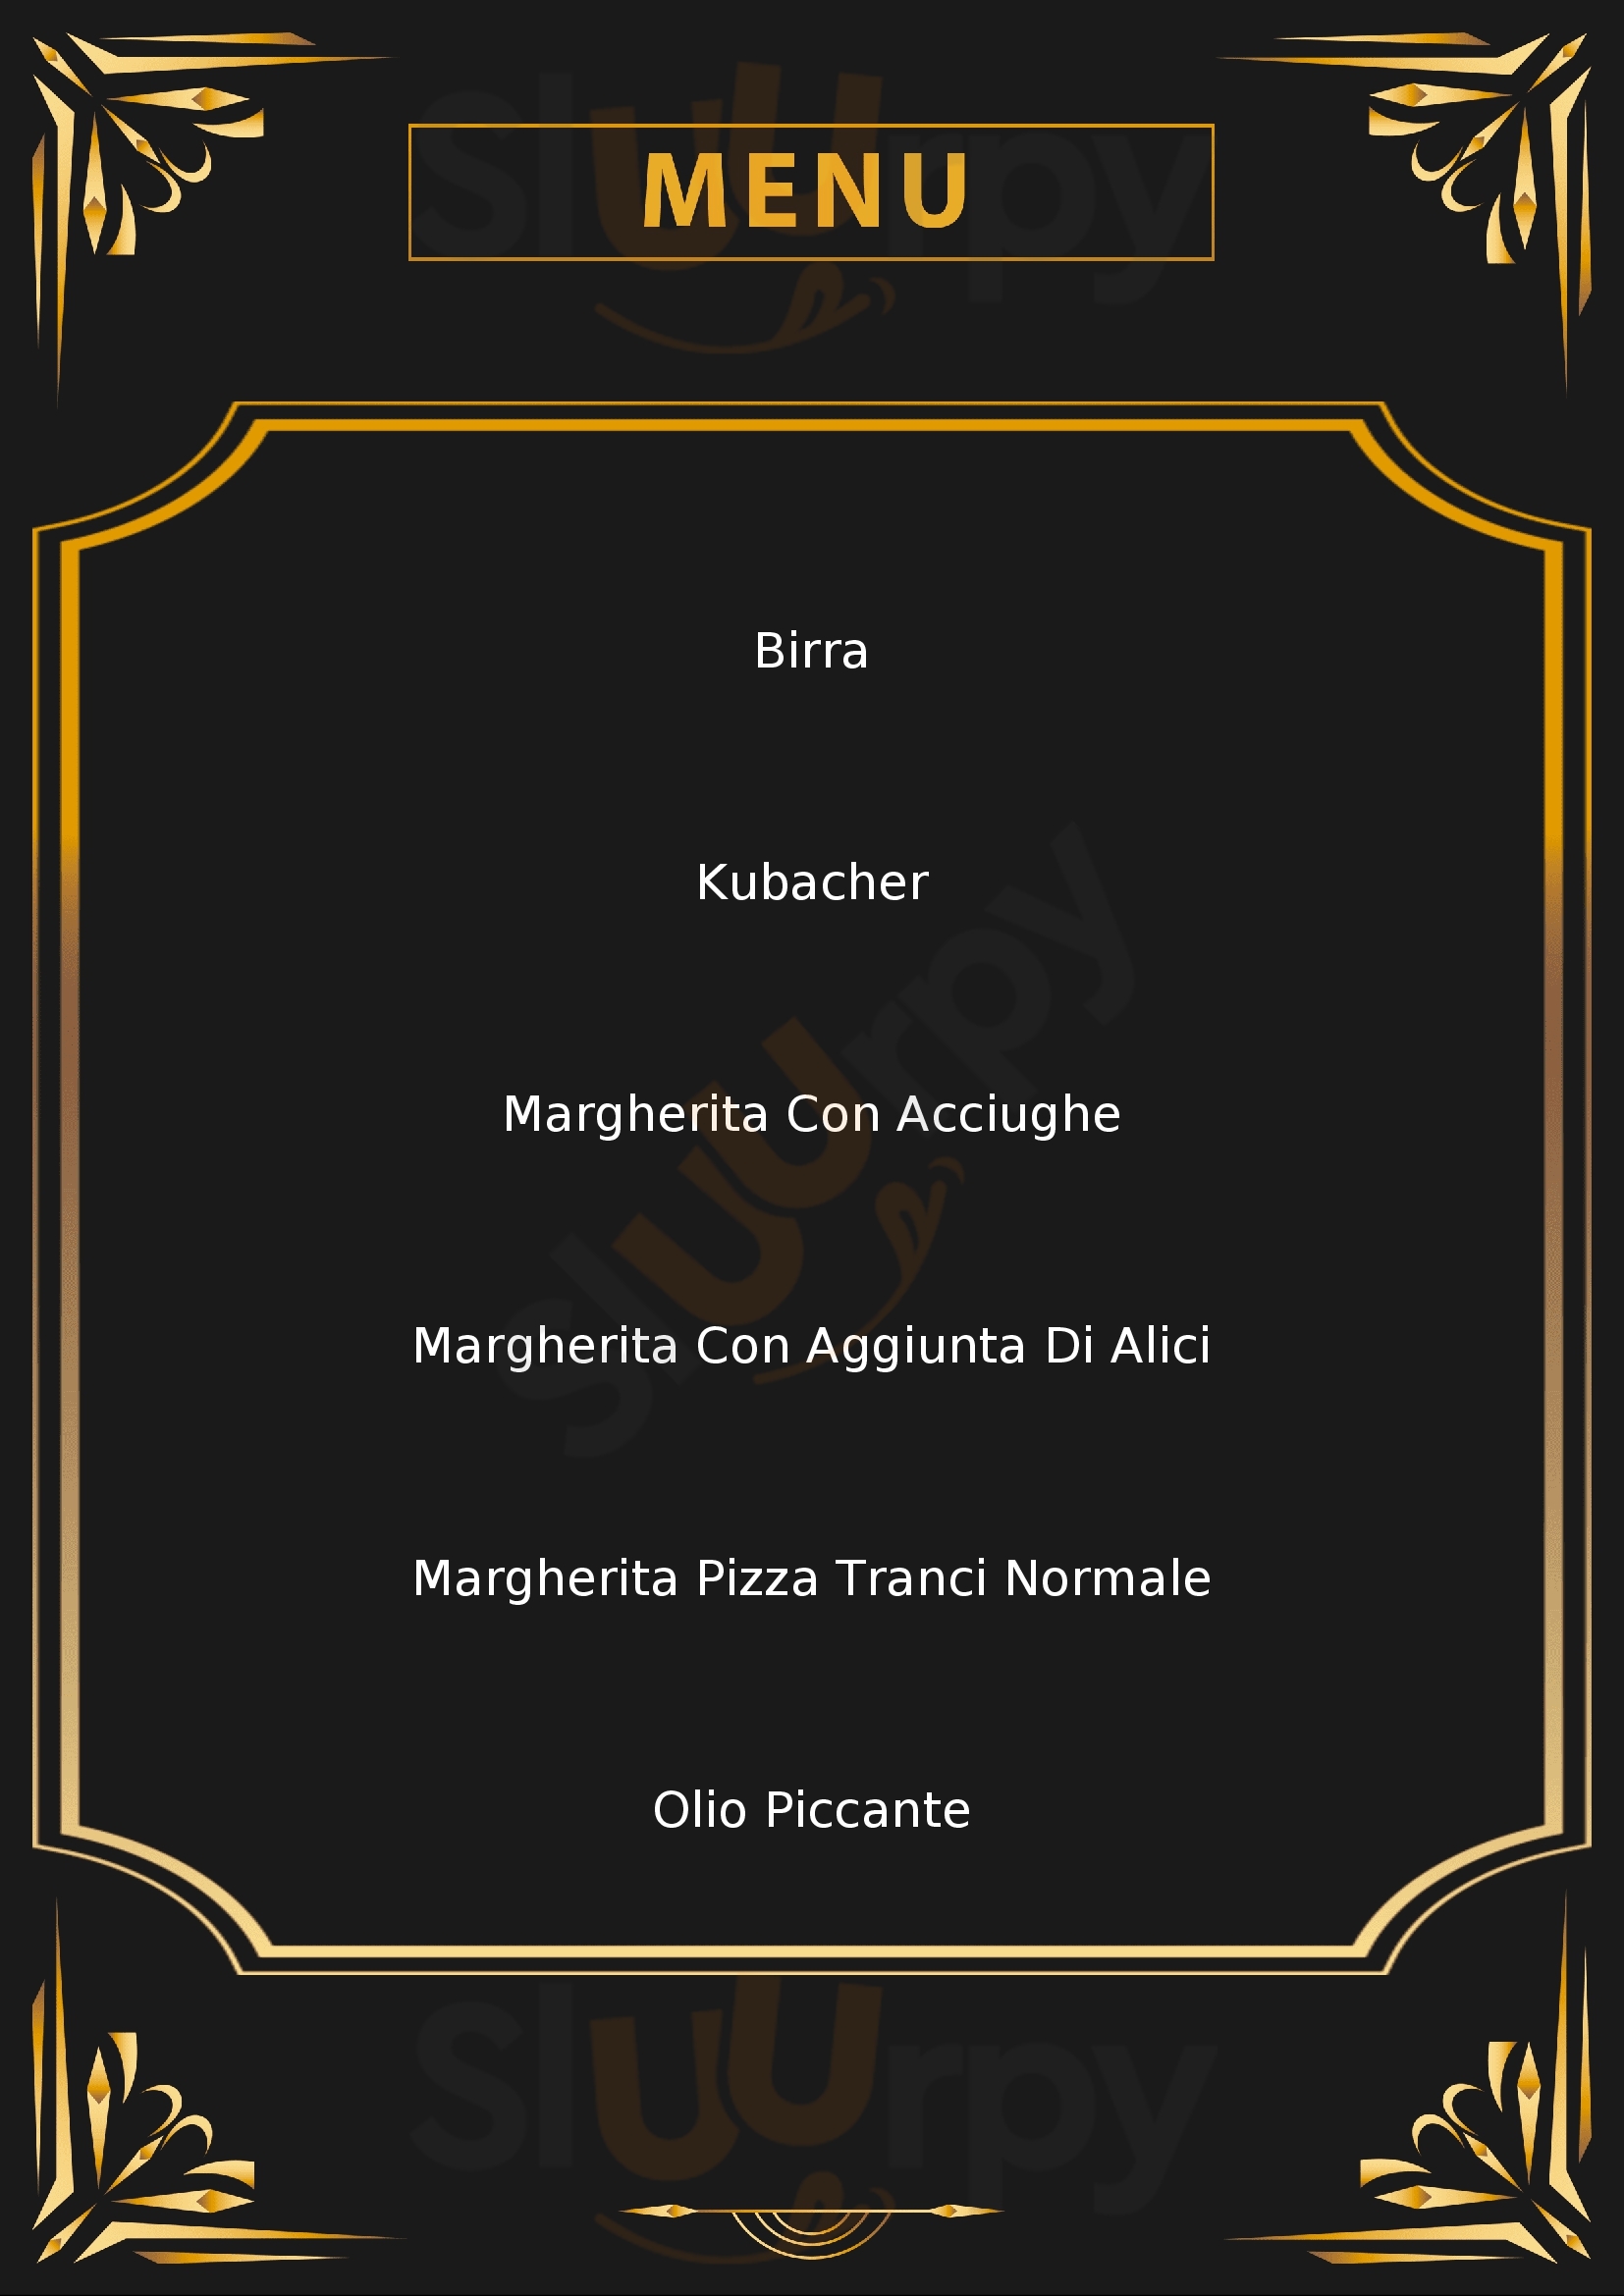 Orlando Pizza al trancio con Forno a Legna Saronno menù 1 pagina